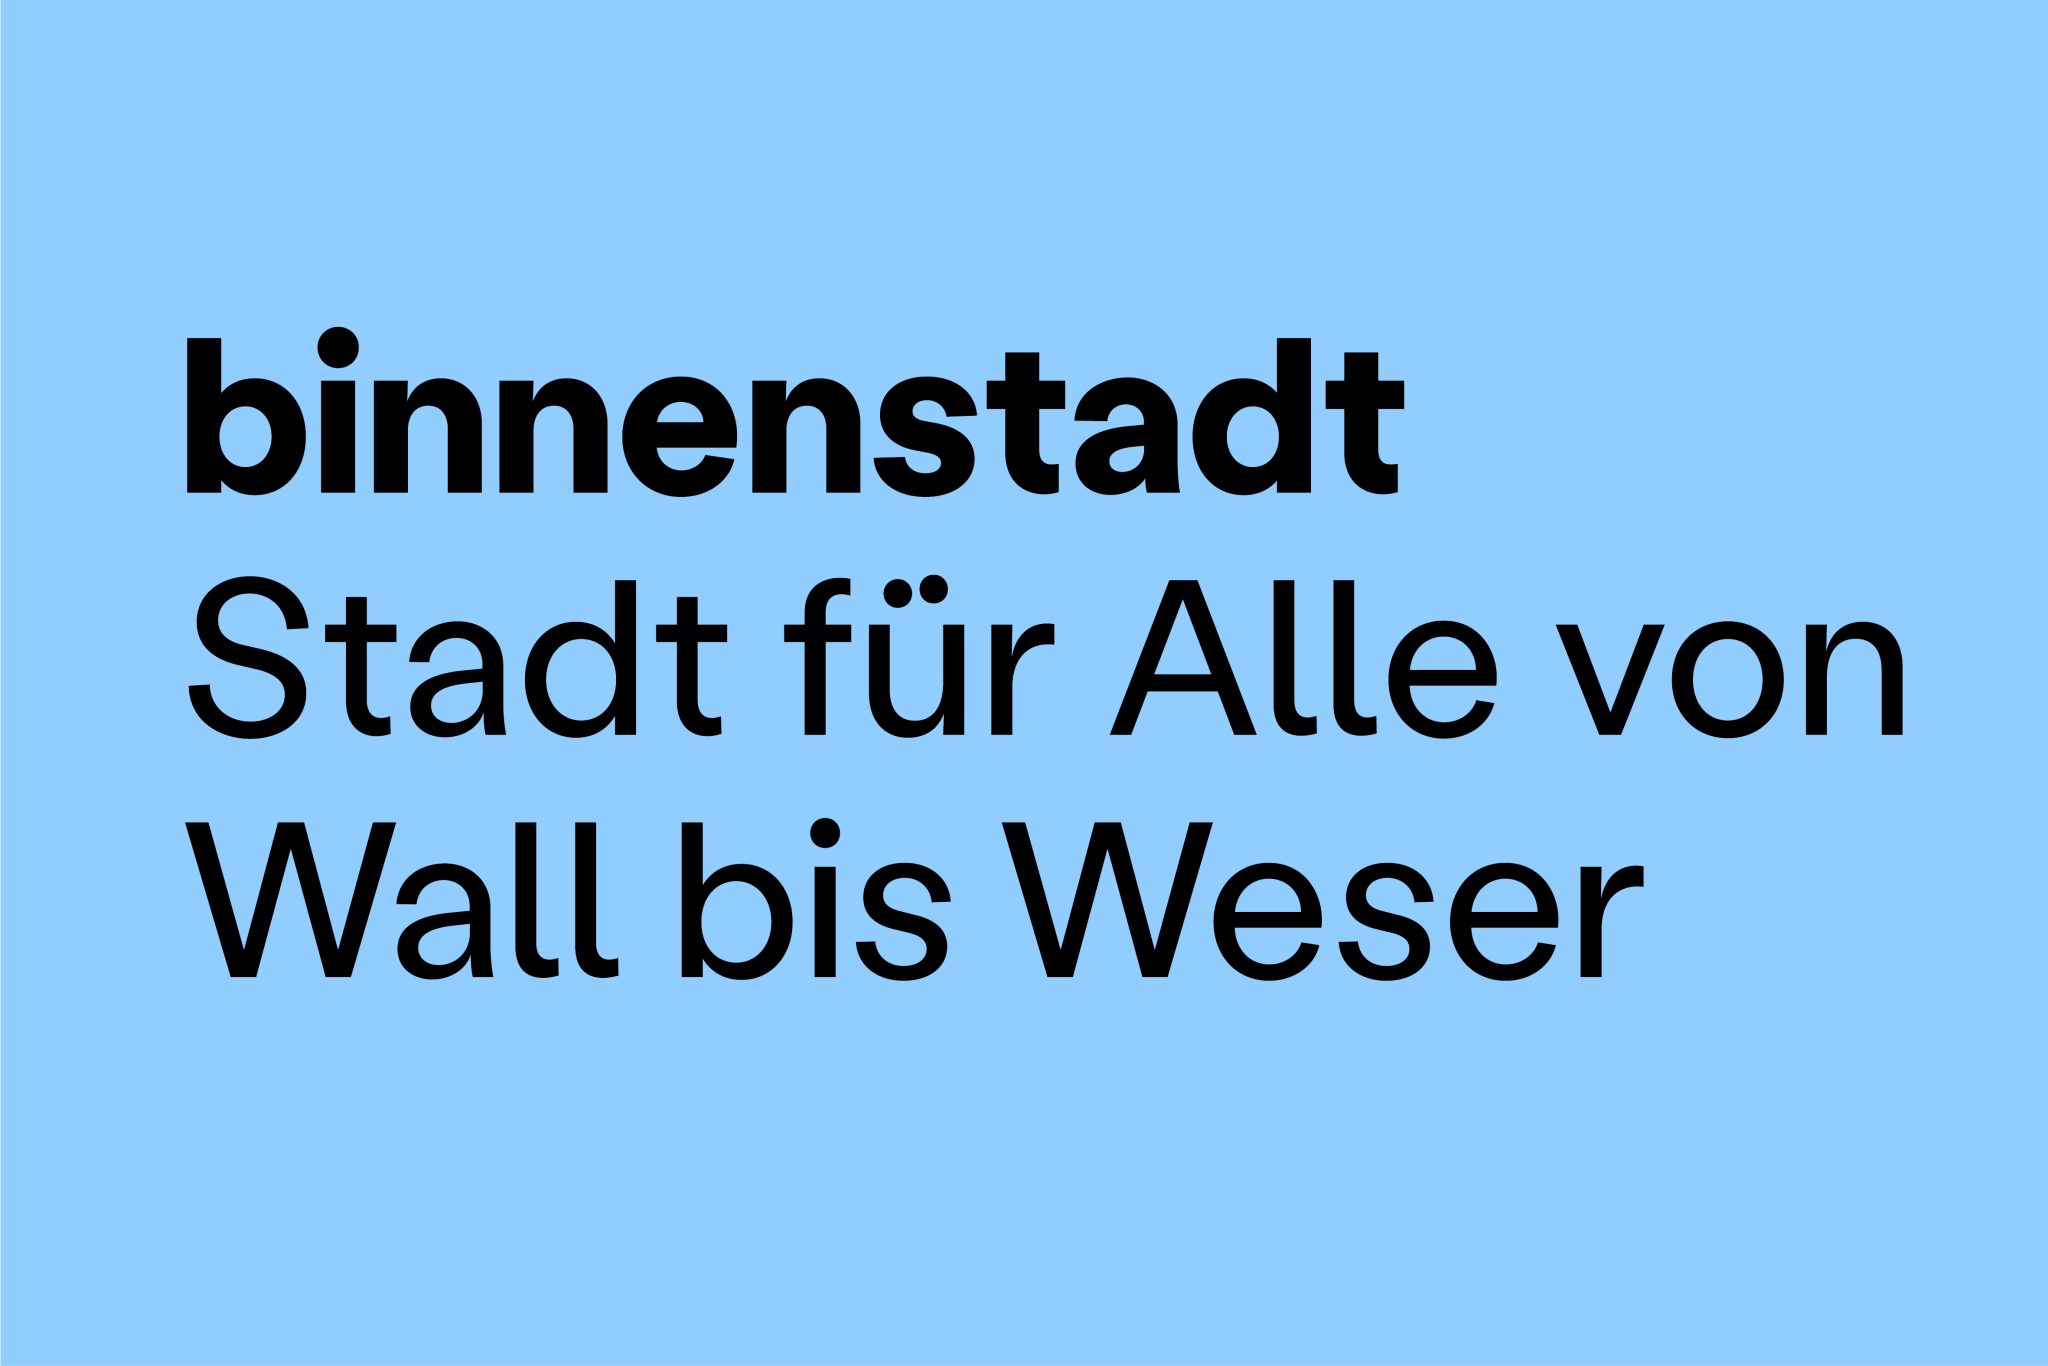 Plakat mit Text "binnenstadt. Stadt für Alle von Wall bis Weser"